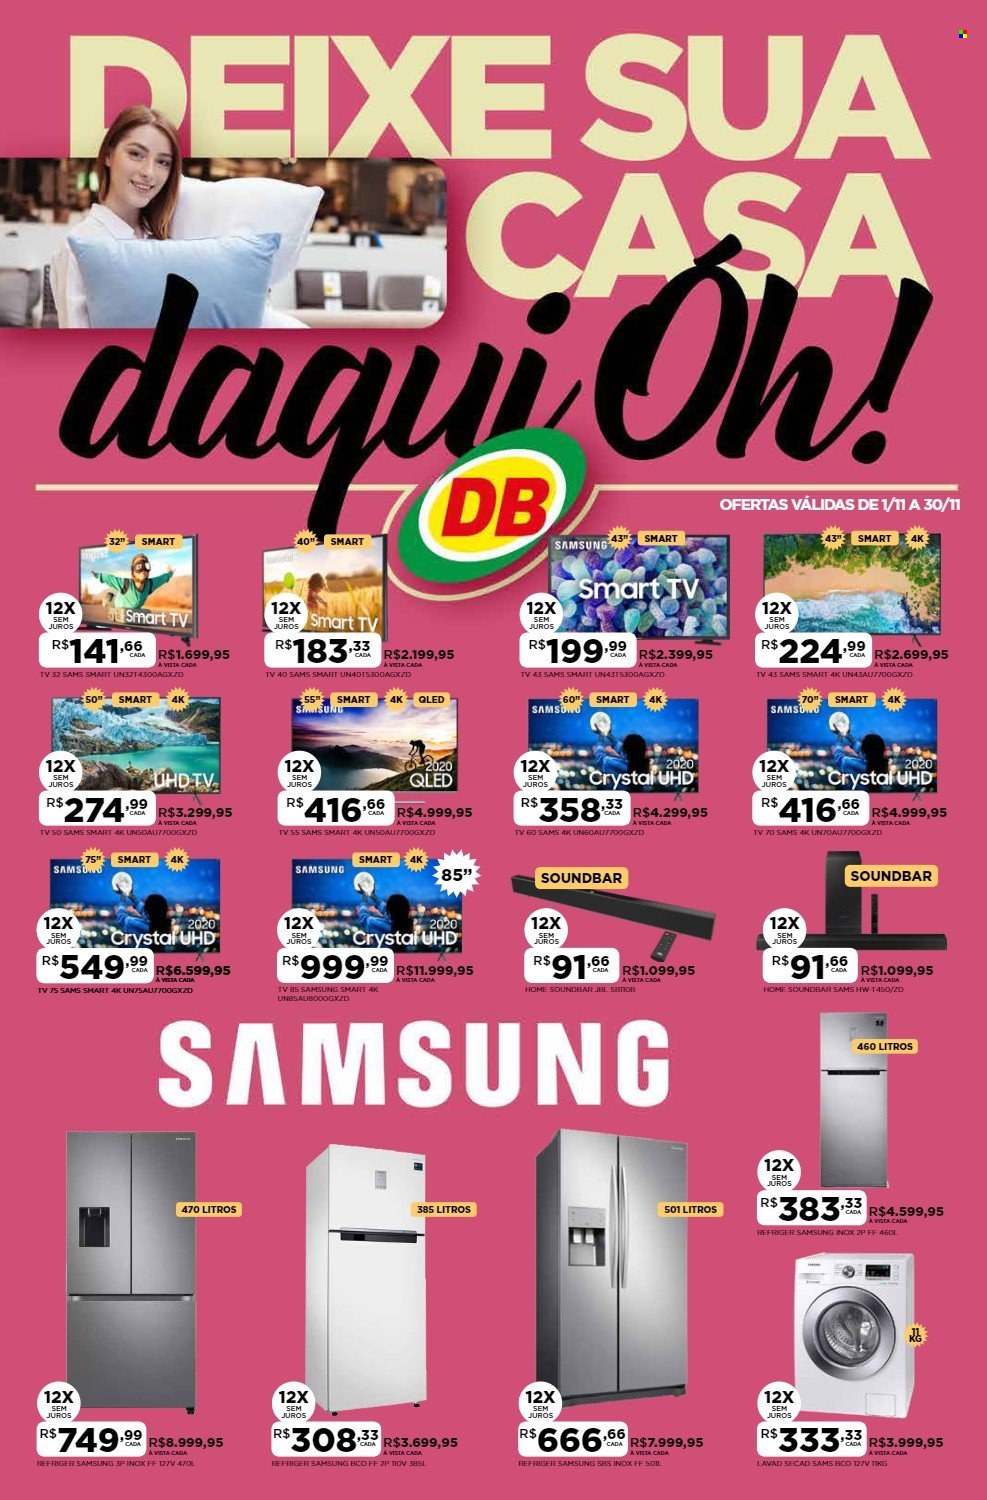 thumbnail - Folheto DB Supermercados - 01/11/2021 - 30/11/2021 - Produtos em promoção - Samsung, Smart TV, televisor (TV), QLED TV, soundbar. Página 1.